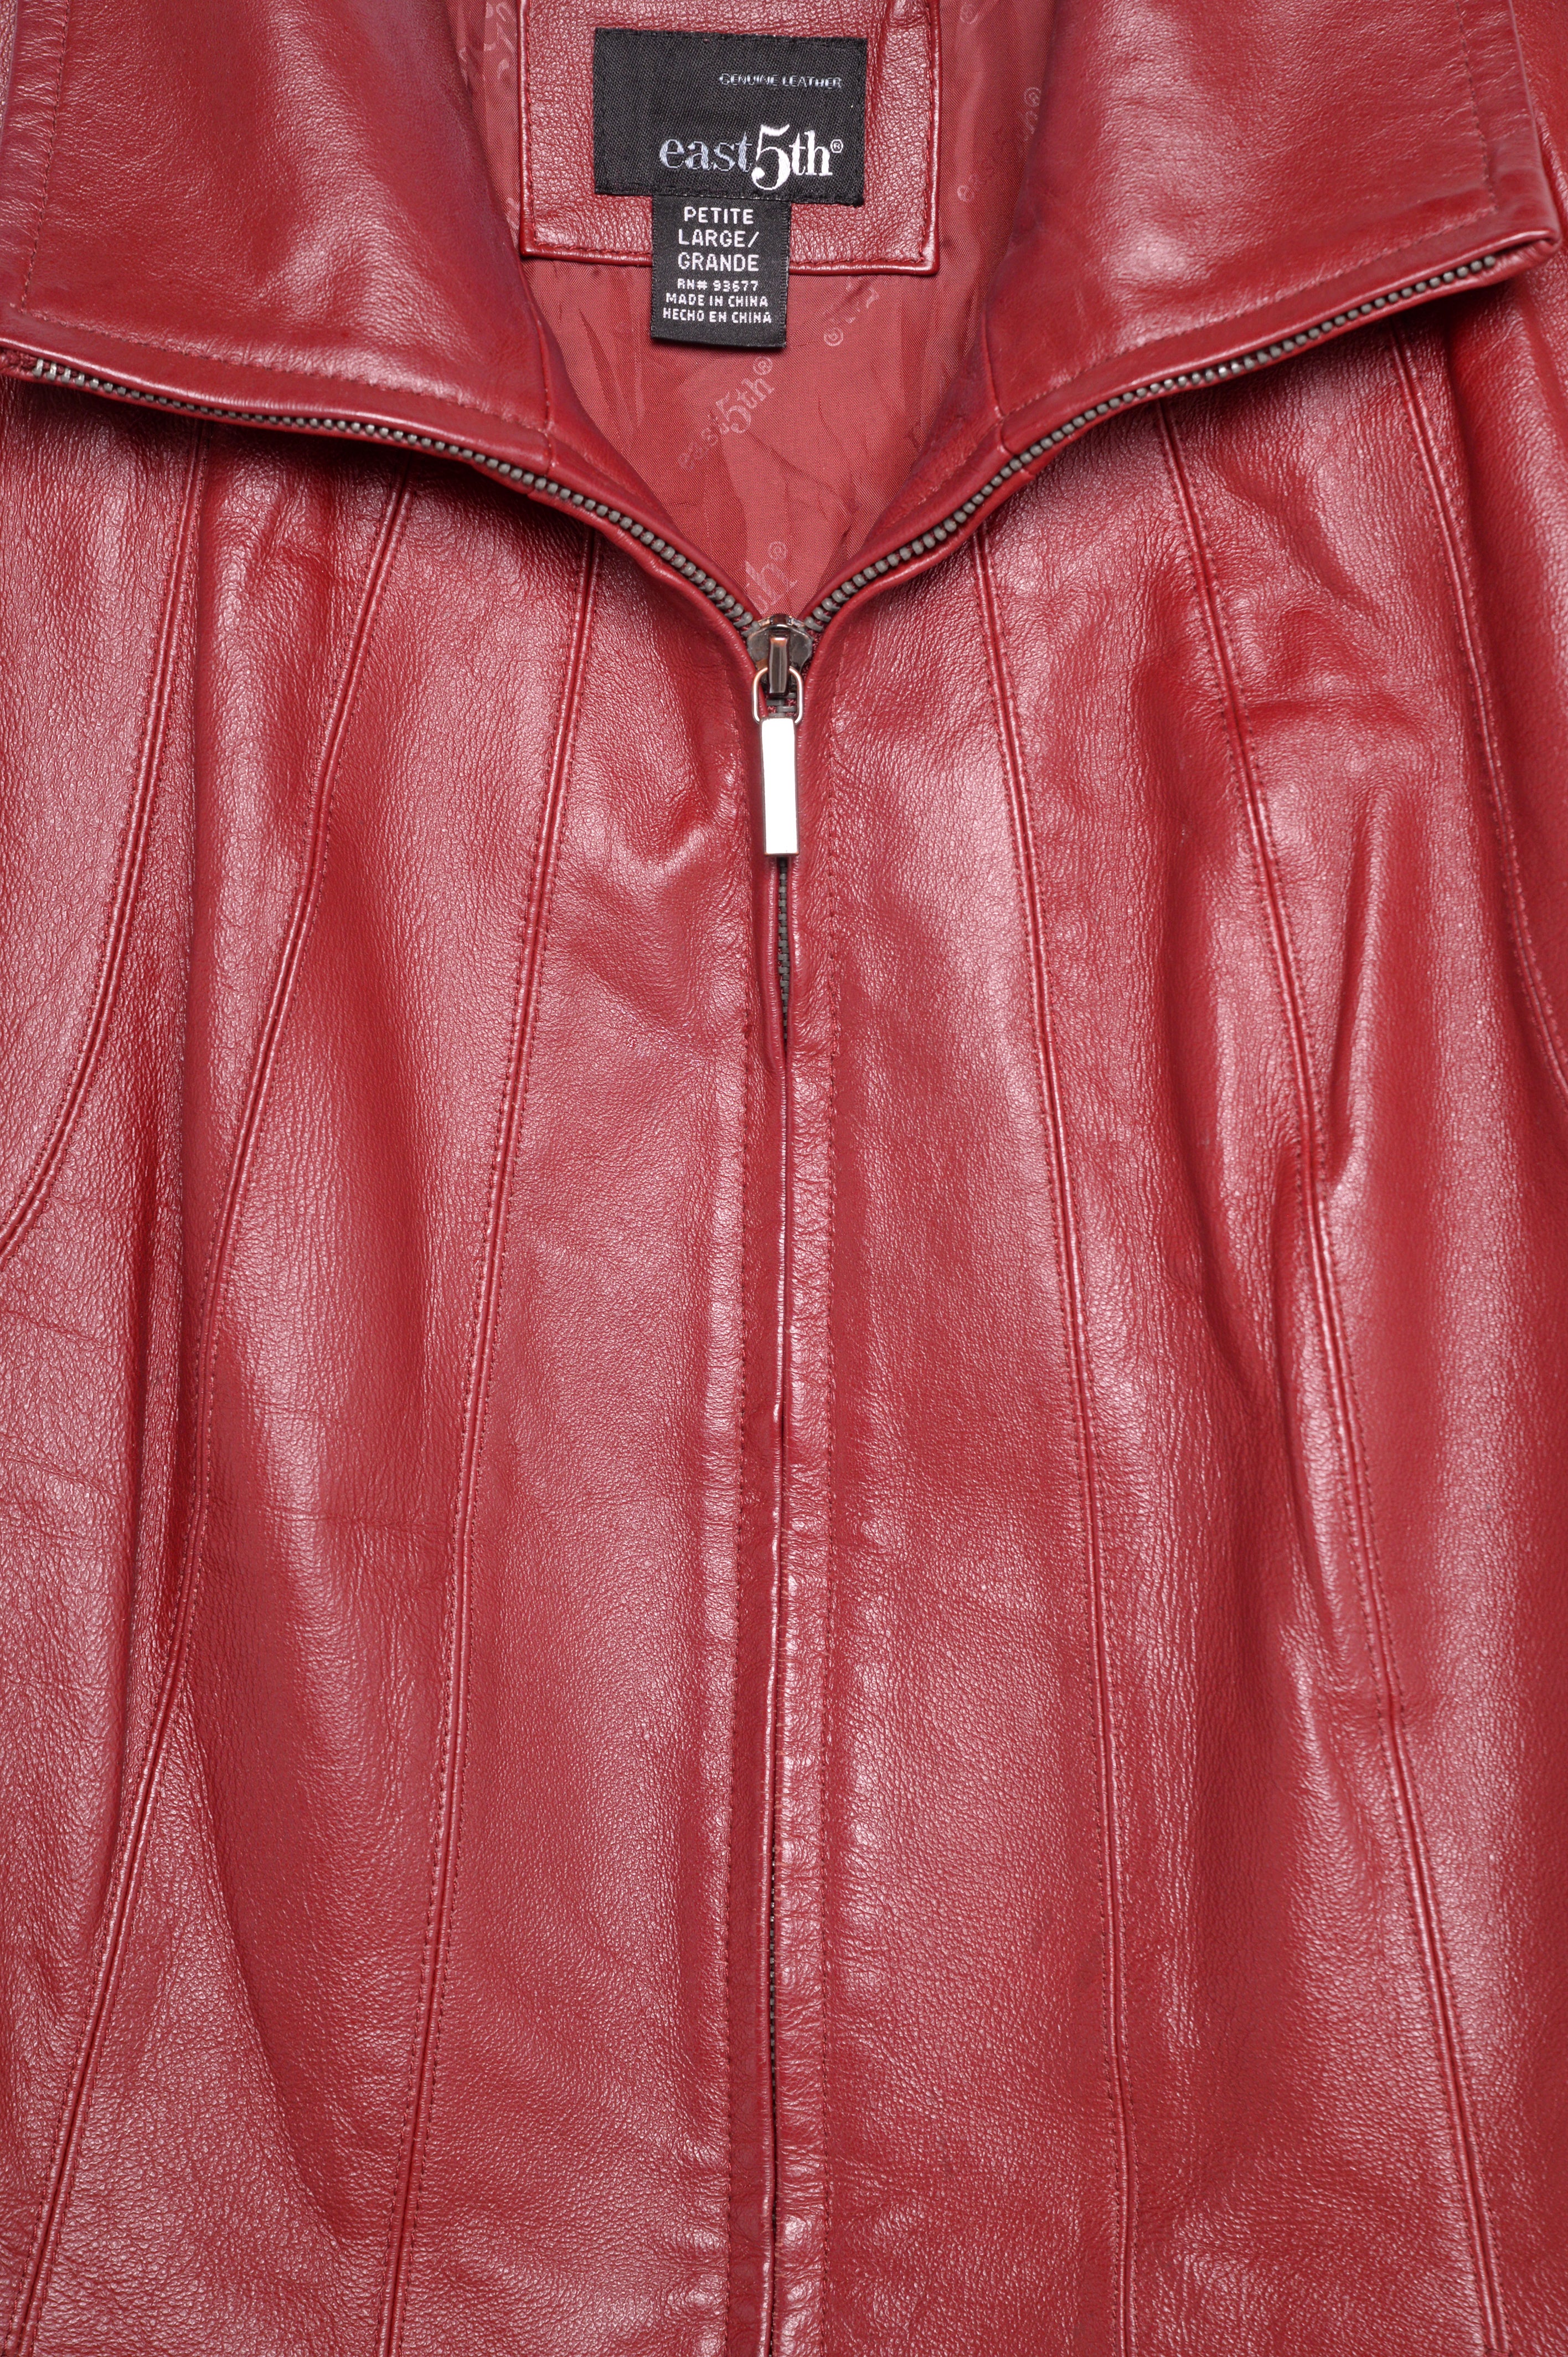 vintage leather jacket red